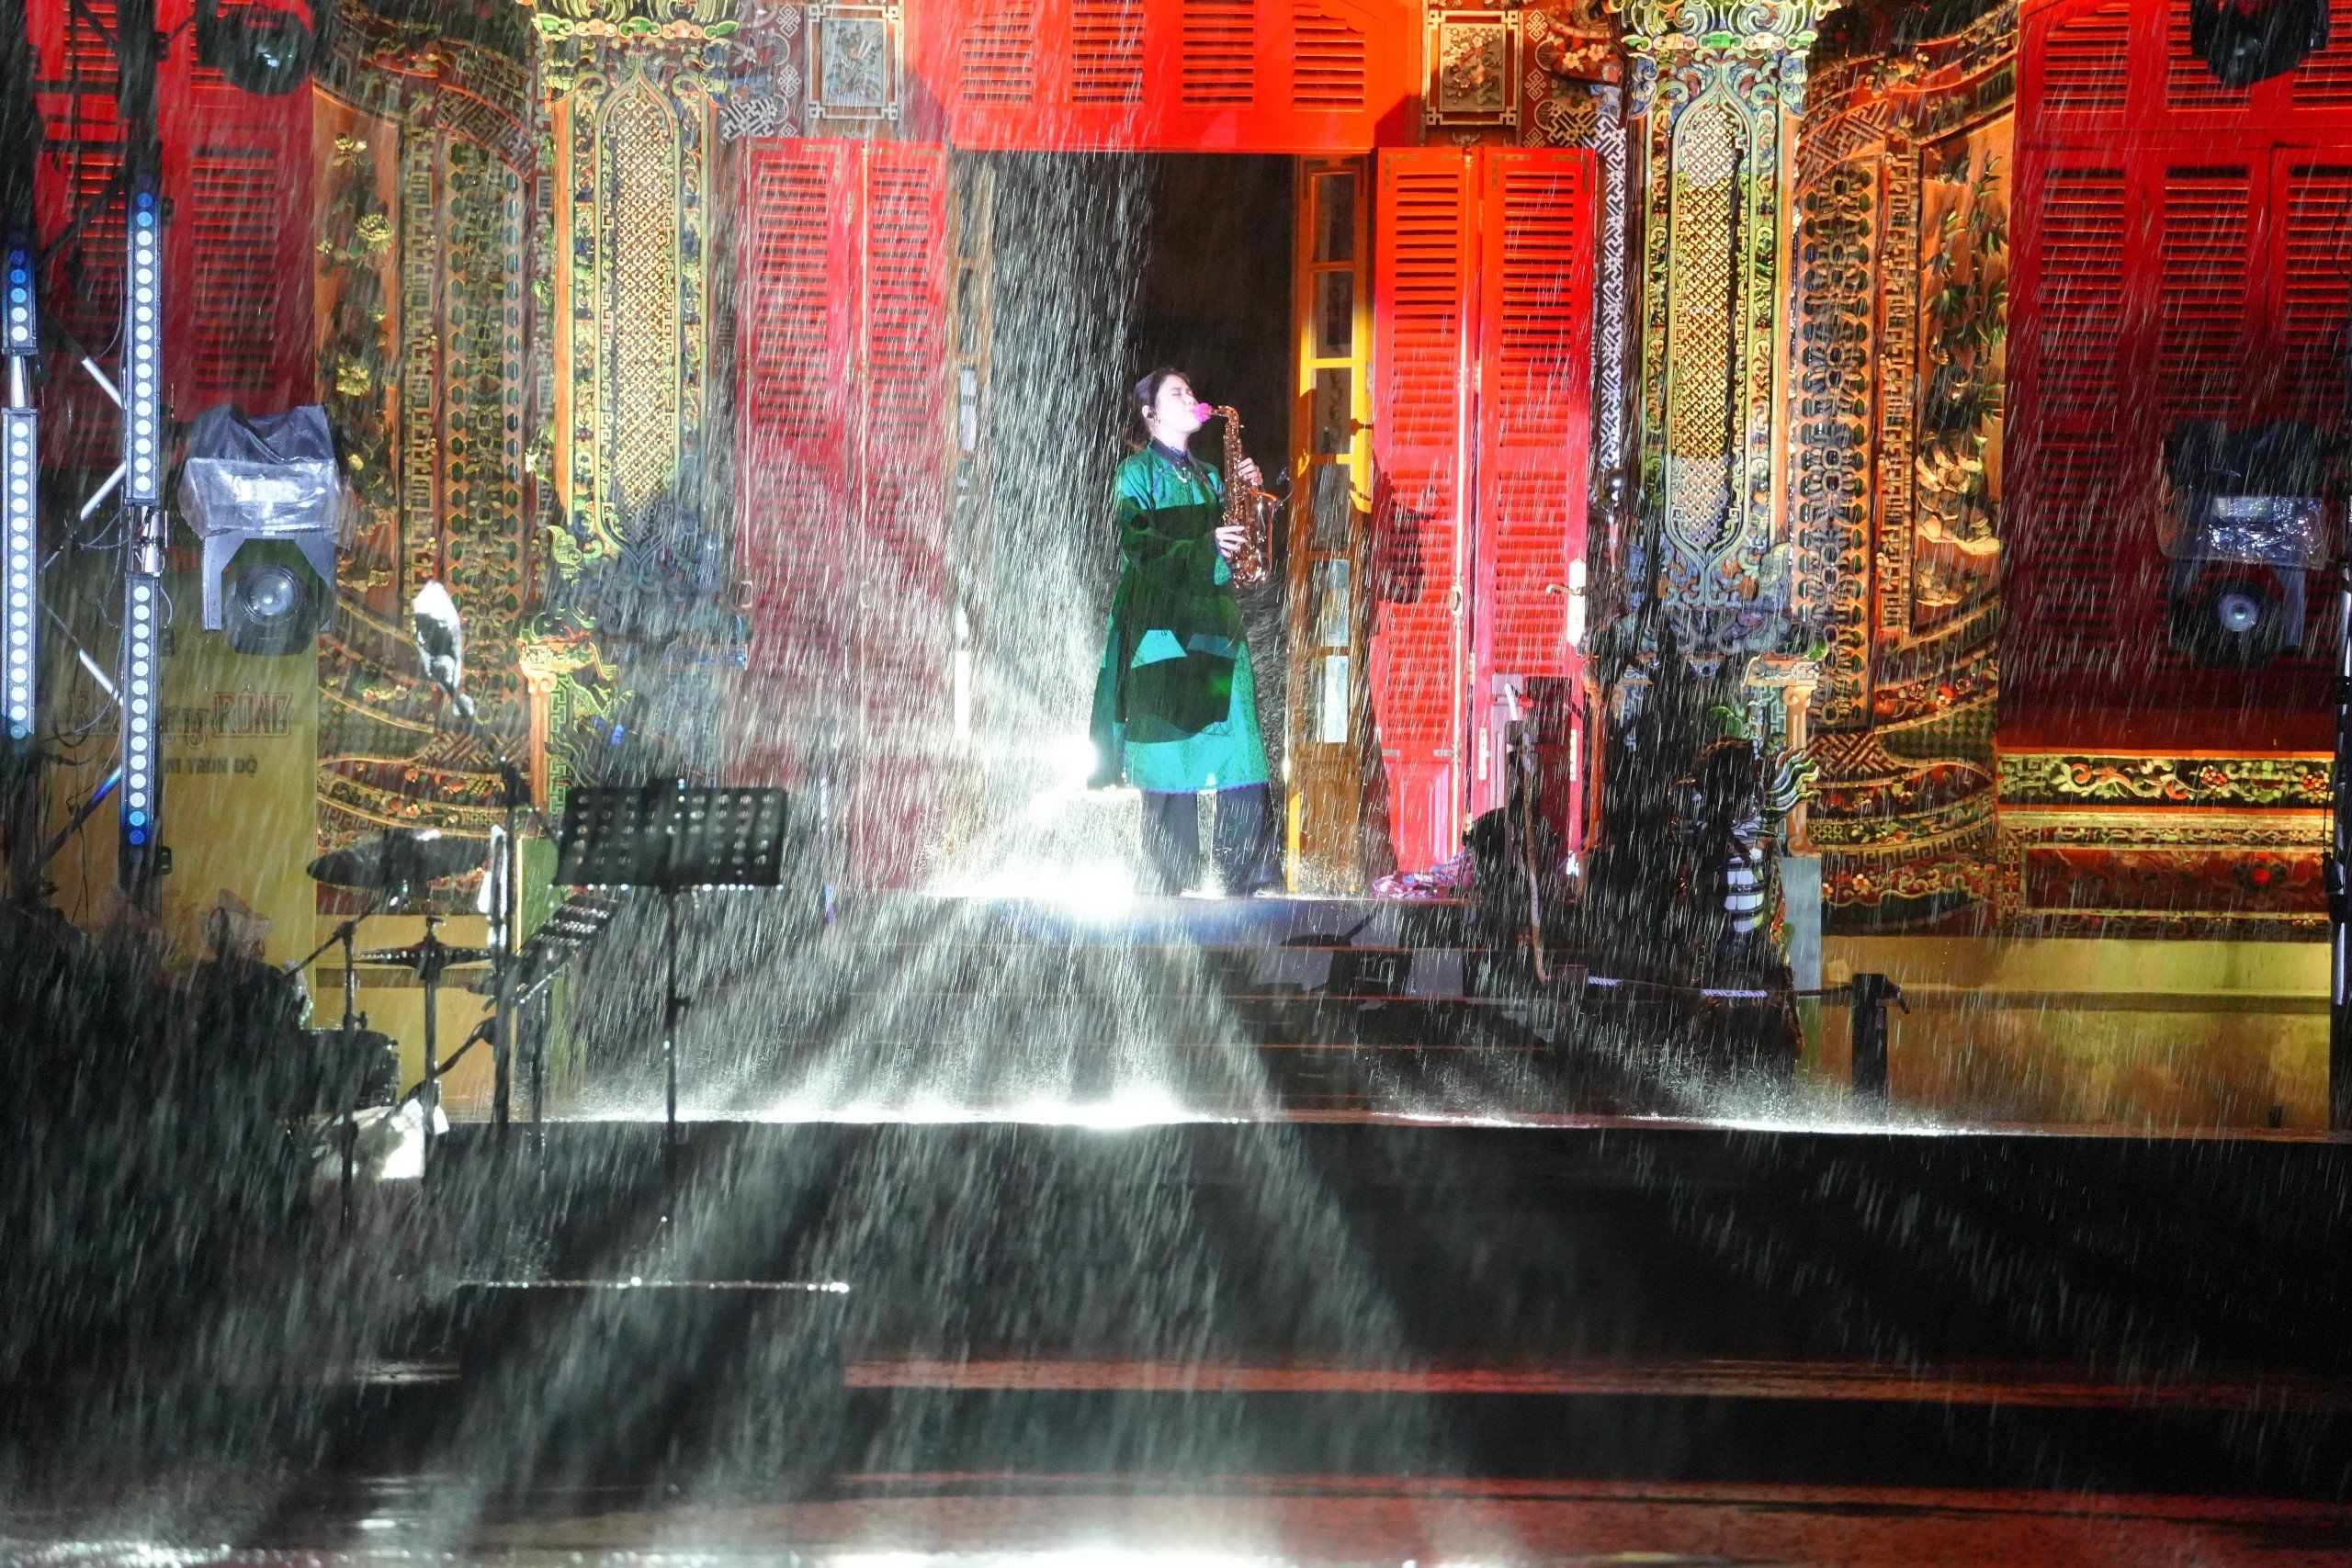 Ấn tượng khó quên khi nghe nhạc Trịnh dưới trời mưa